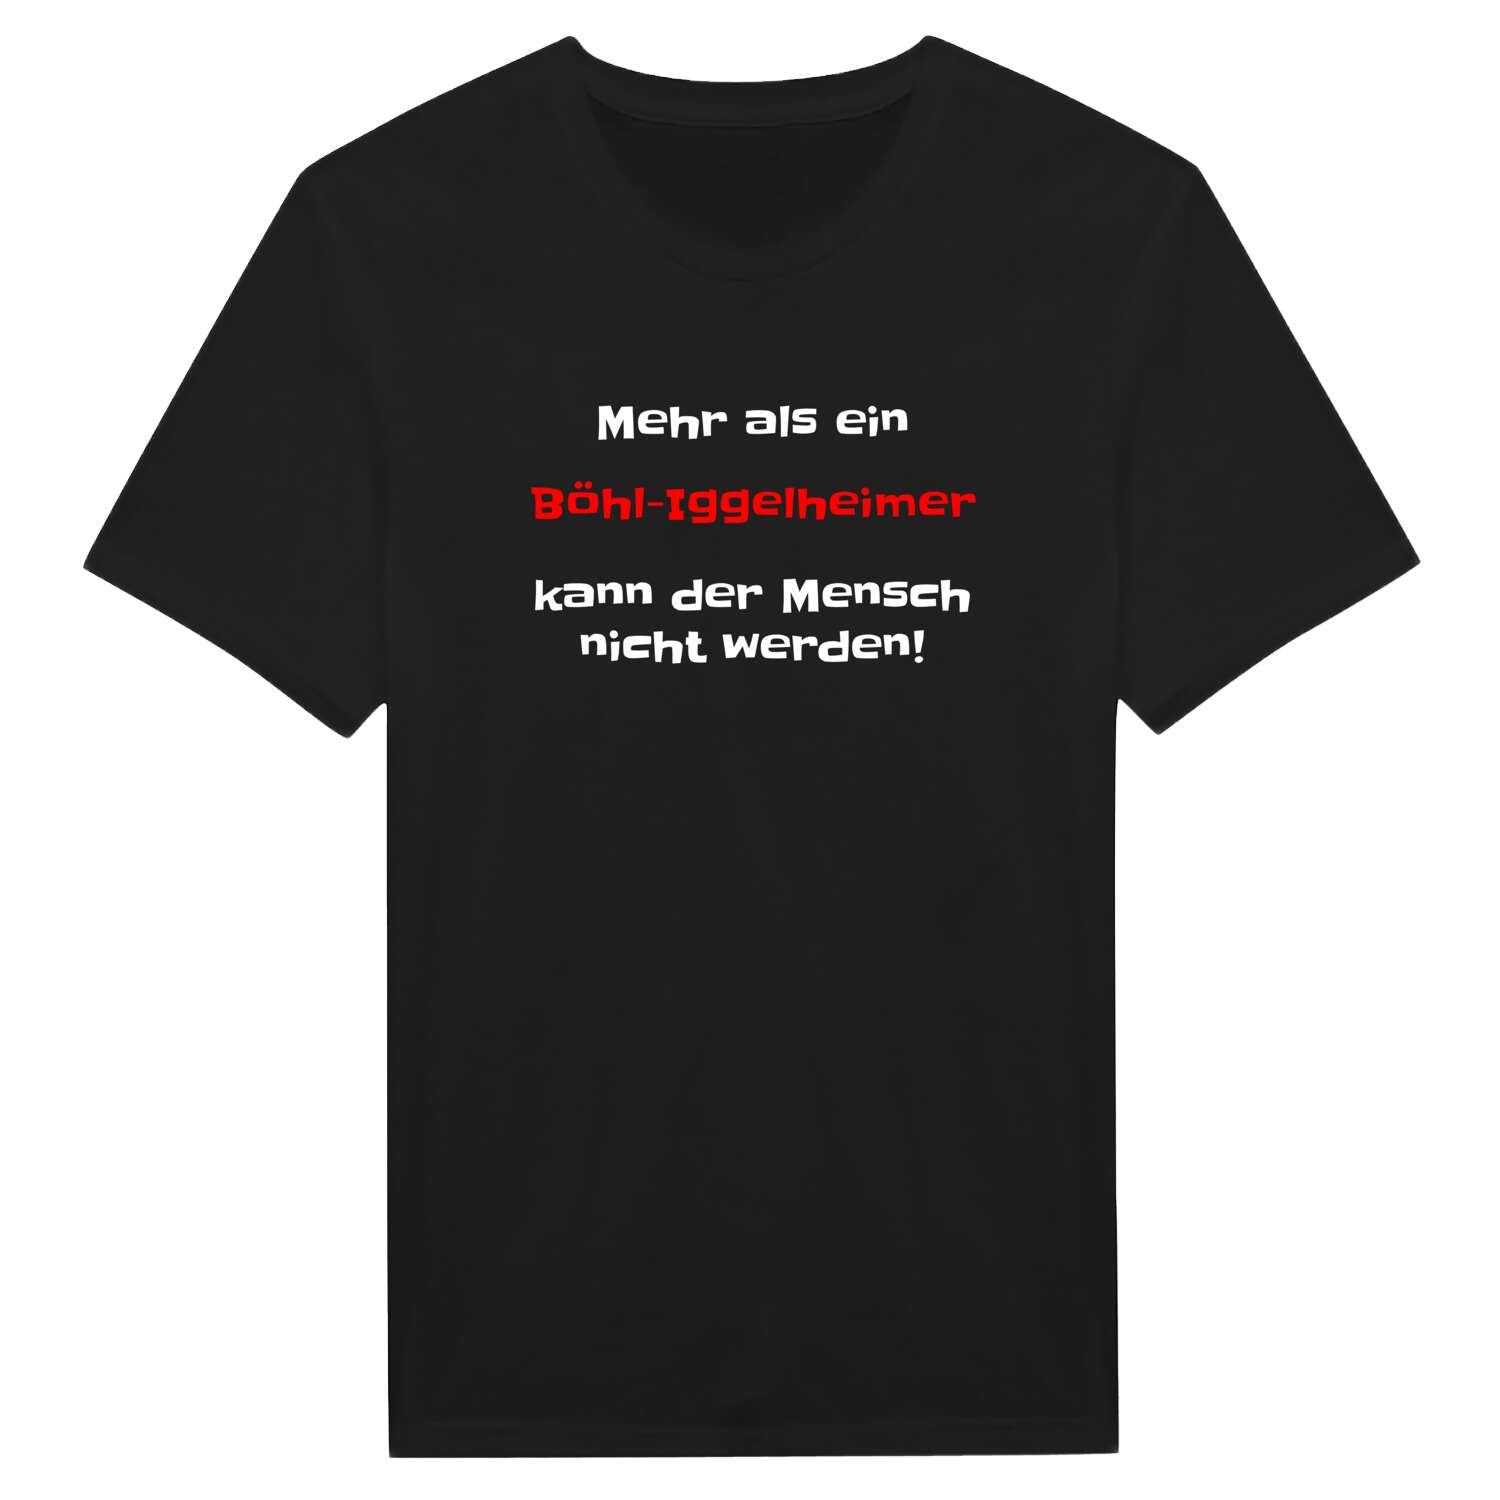 Böhl-Iggelheim T-Shirt »Mehr als ein«